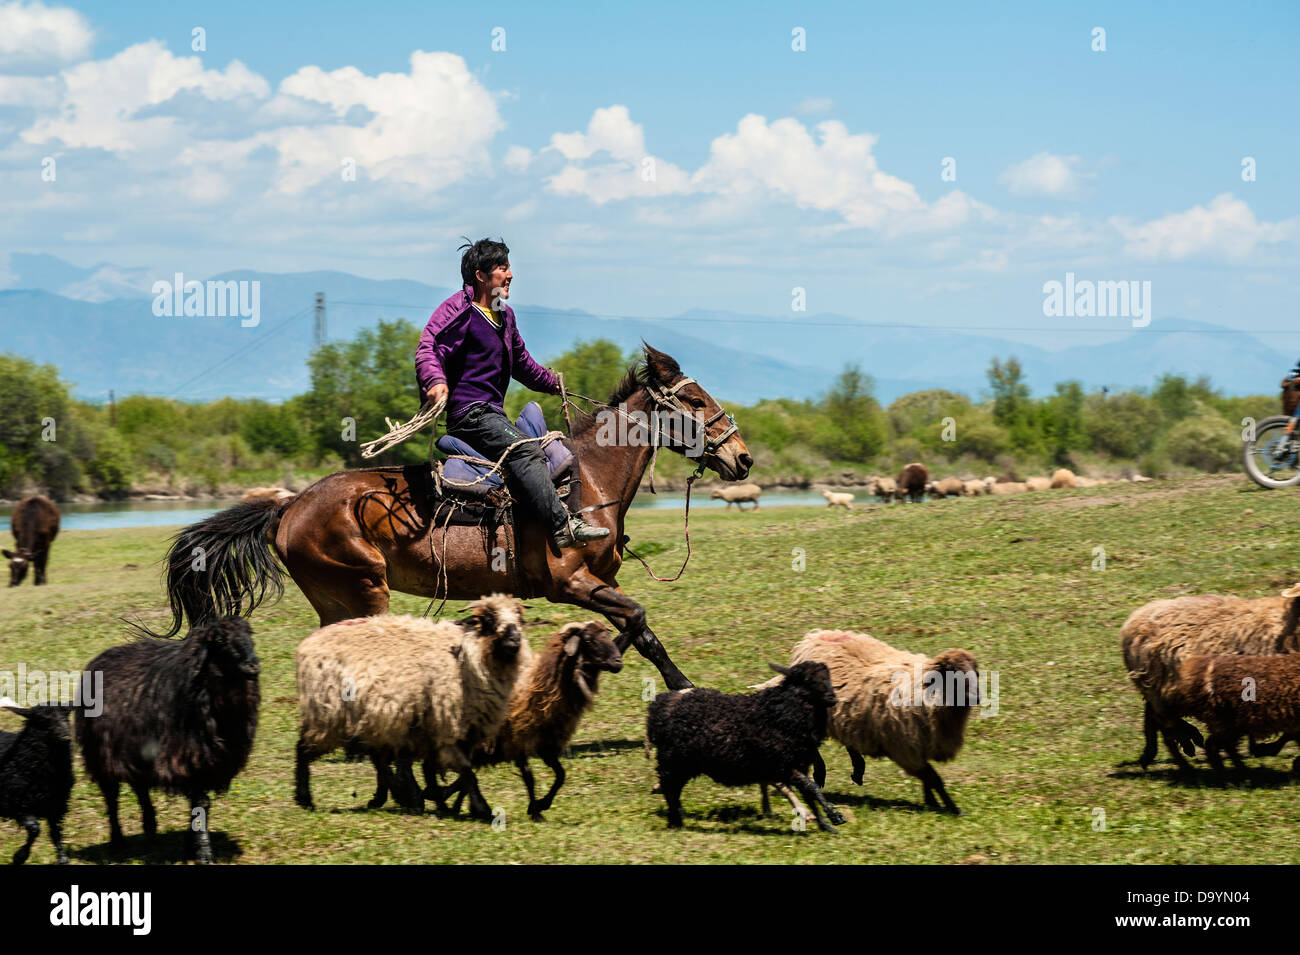 Le berger conduire un troupeau de moutons s'exécutant sur la prairie Banque D'Images